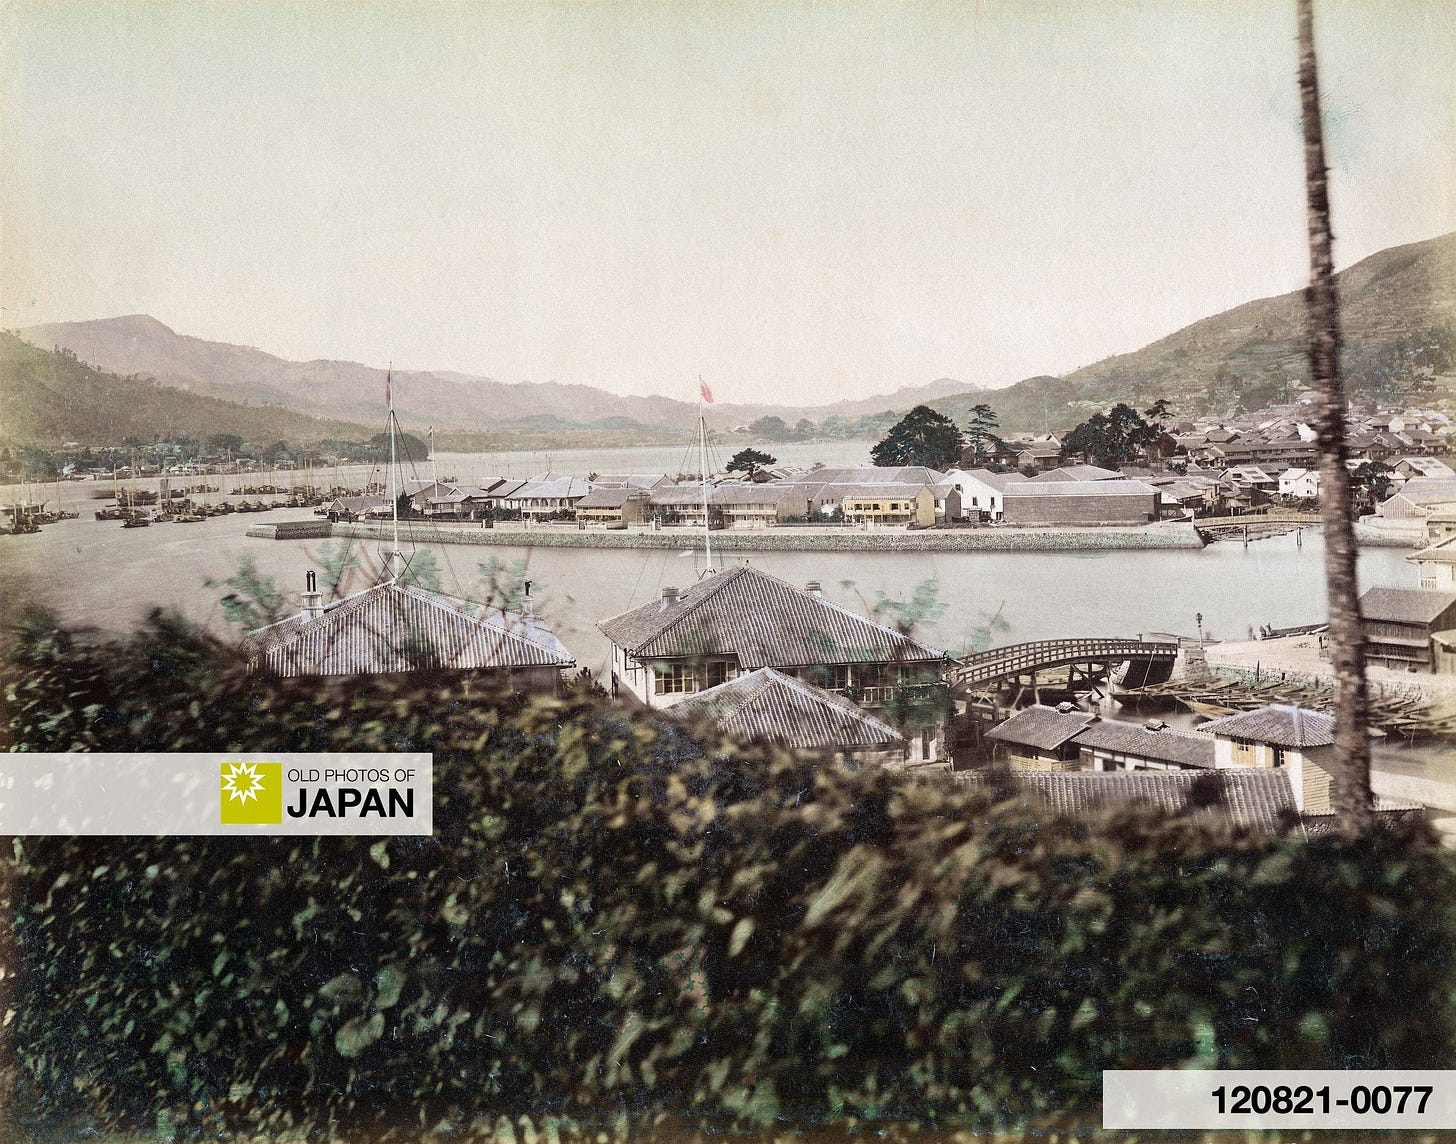 Dejima in Nagasaki Harbor, early 1870s